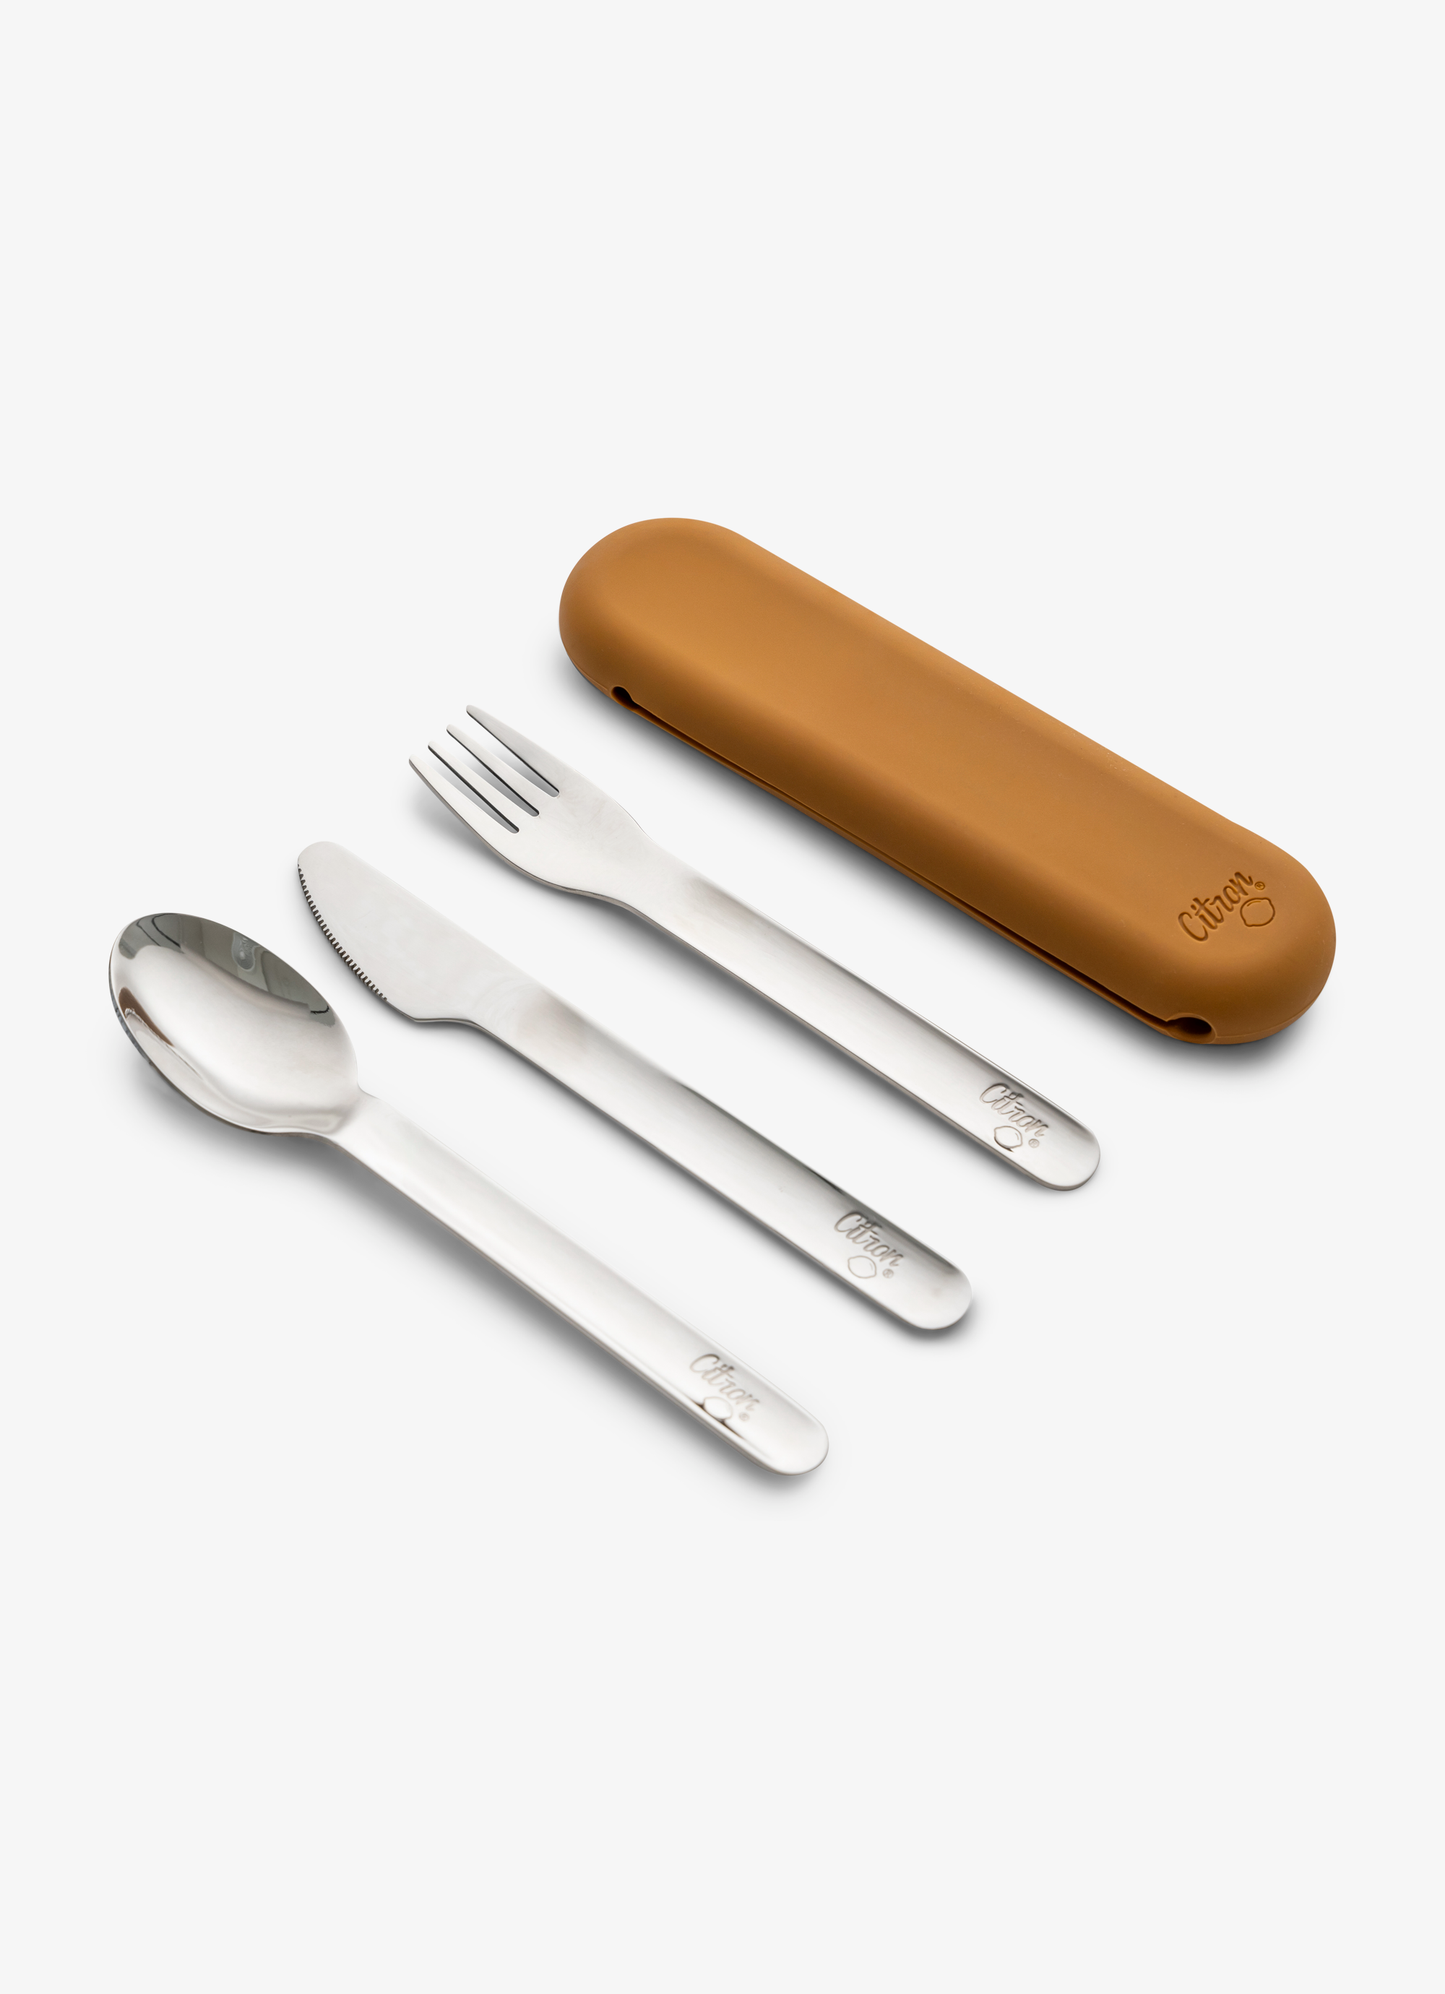 مجموعة أدوات المائدة من الفولاذ المقاوم للصدا - كراميل + حقيبة